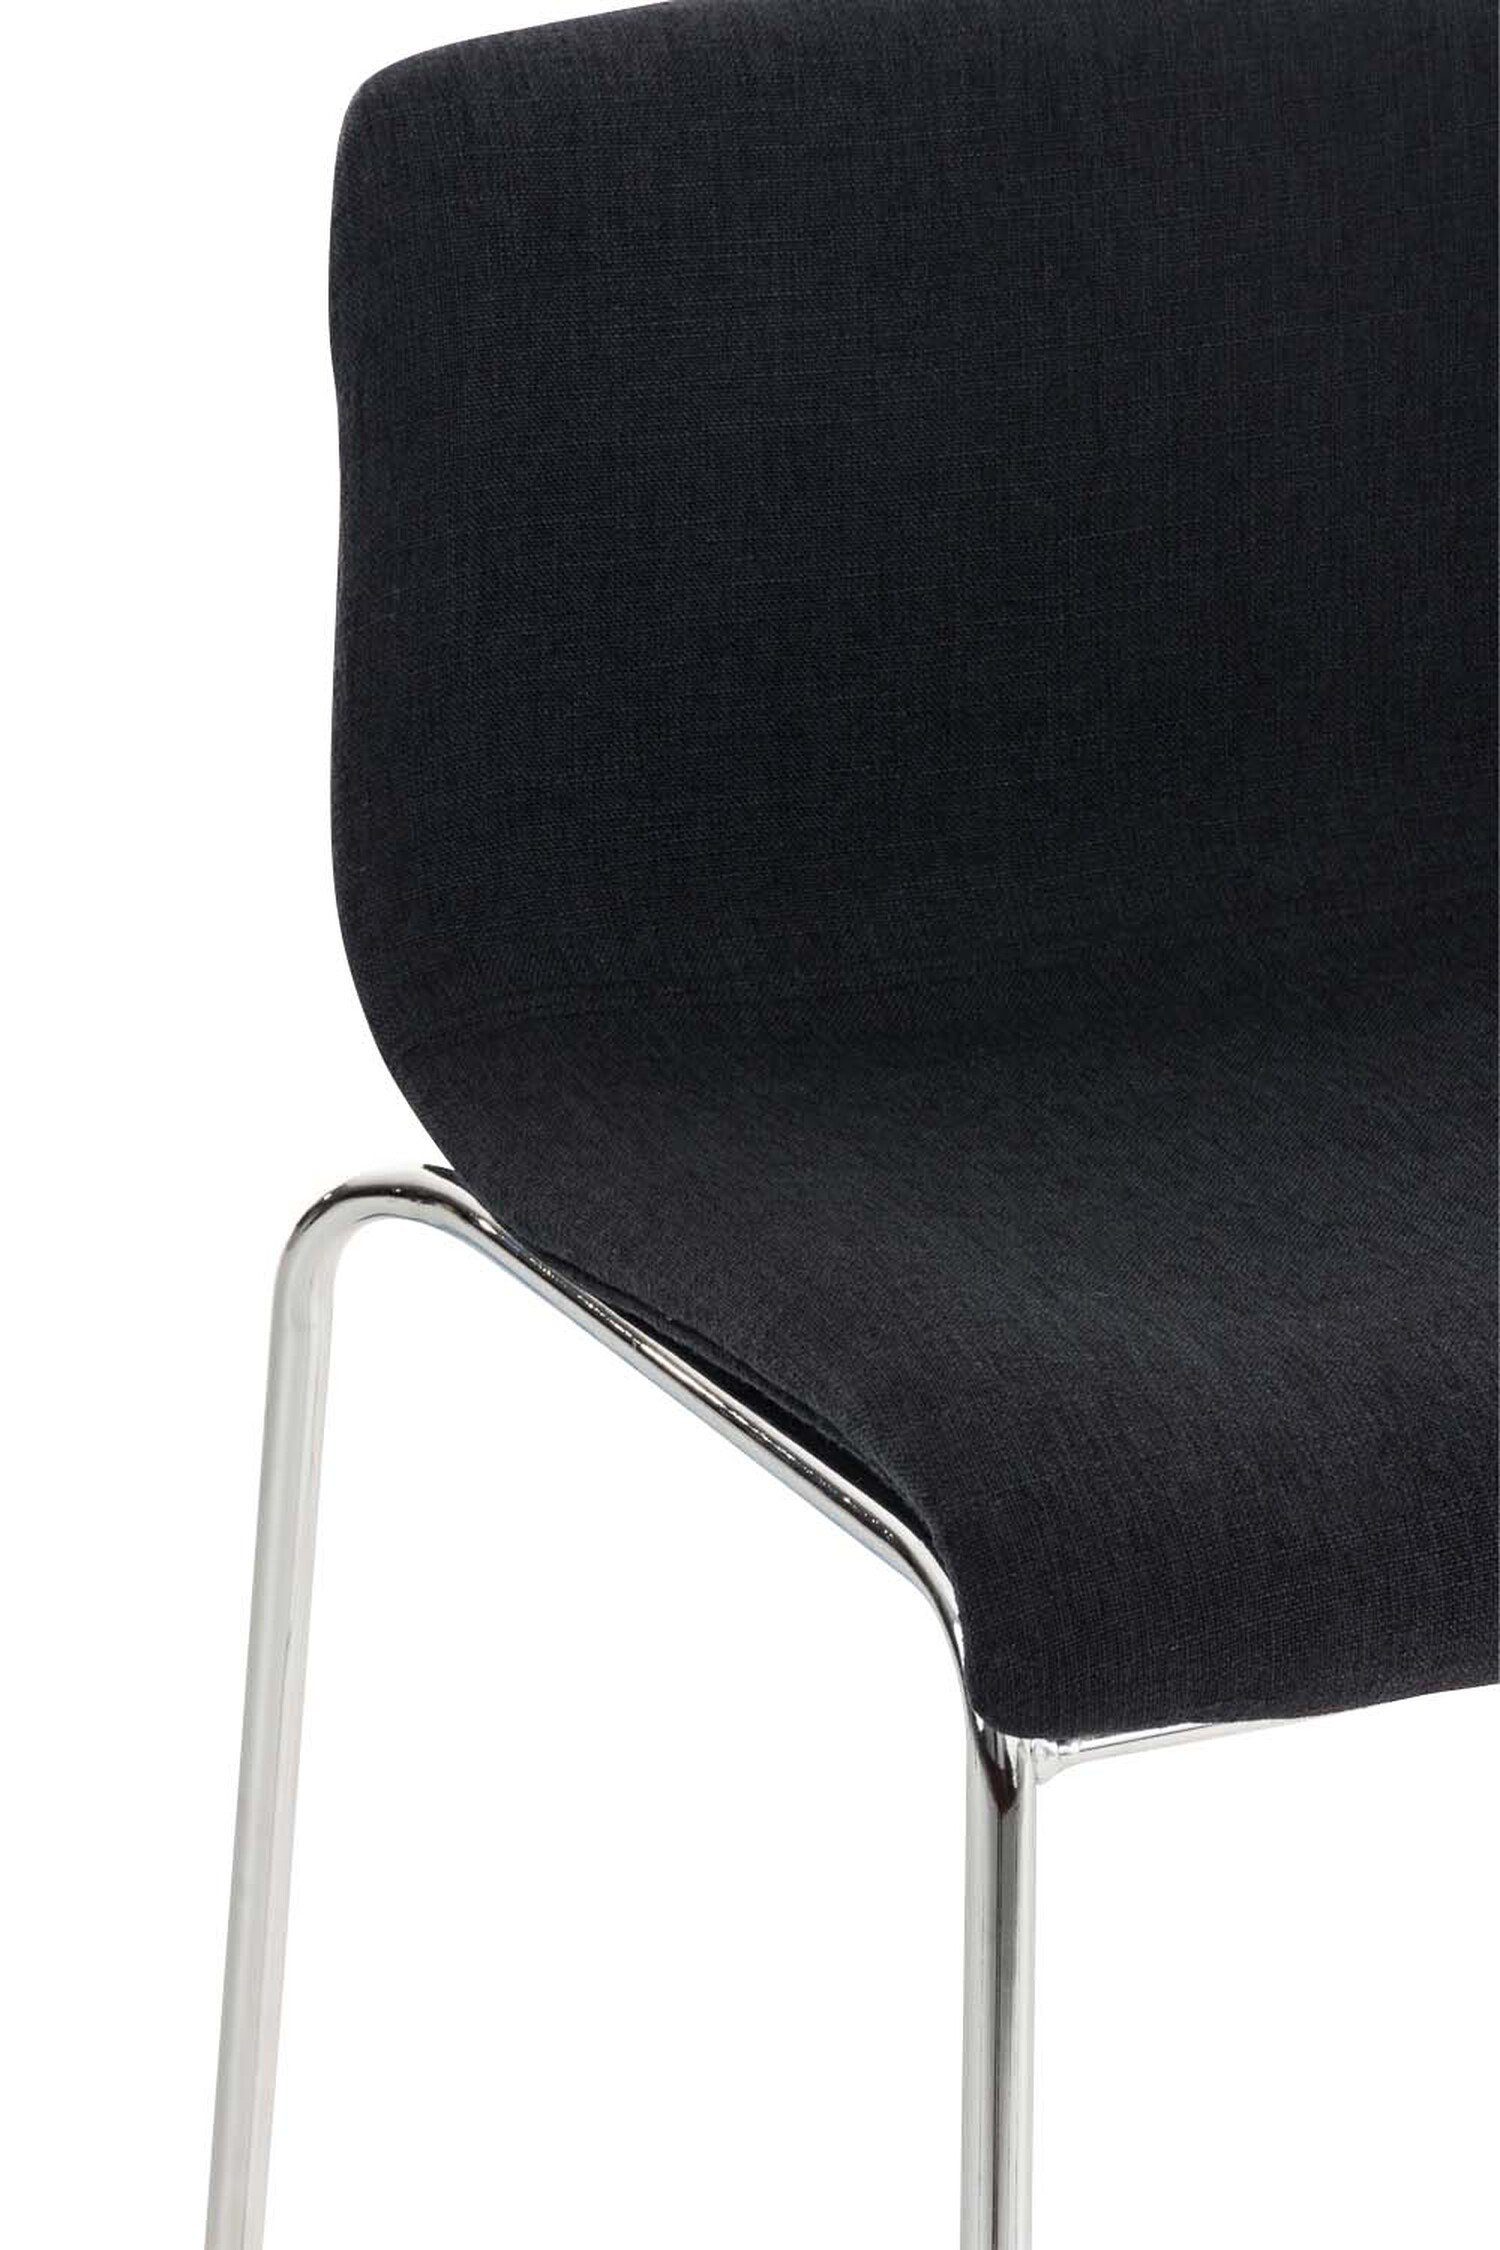 Sitzfläche: Theke Stoff TPFLiving Gestell Fußstütze & - Barhocker Küche - Chrom Metall für Tresenhocker), - Hoover Schwarz Hocker (mit